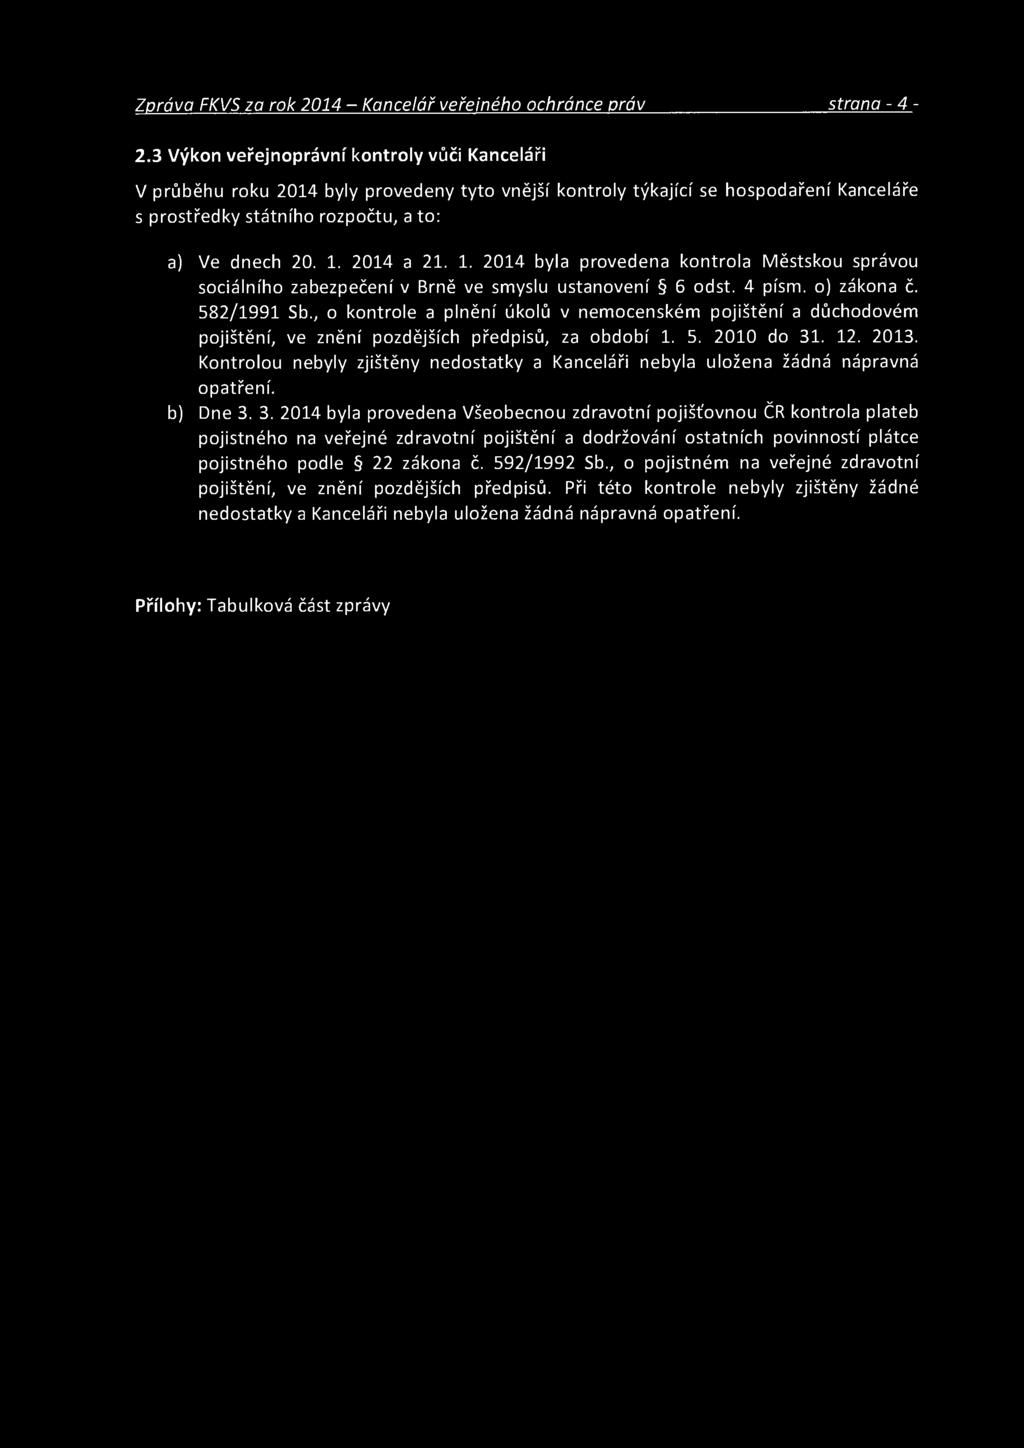 2014 a 21. 1. 2014 byla provedena kontrola Městskou správou sociálního zabezpečení v Brně ve smyslu ustanovení 6 odst. 4 písm. o) zákona č. 582/1991 Sb.